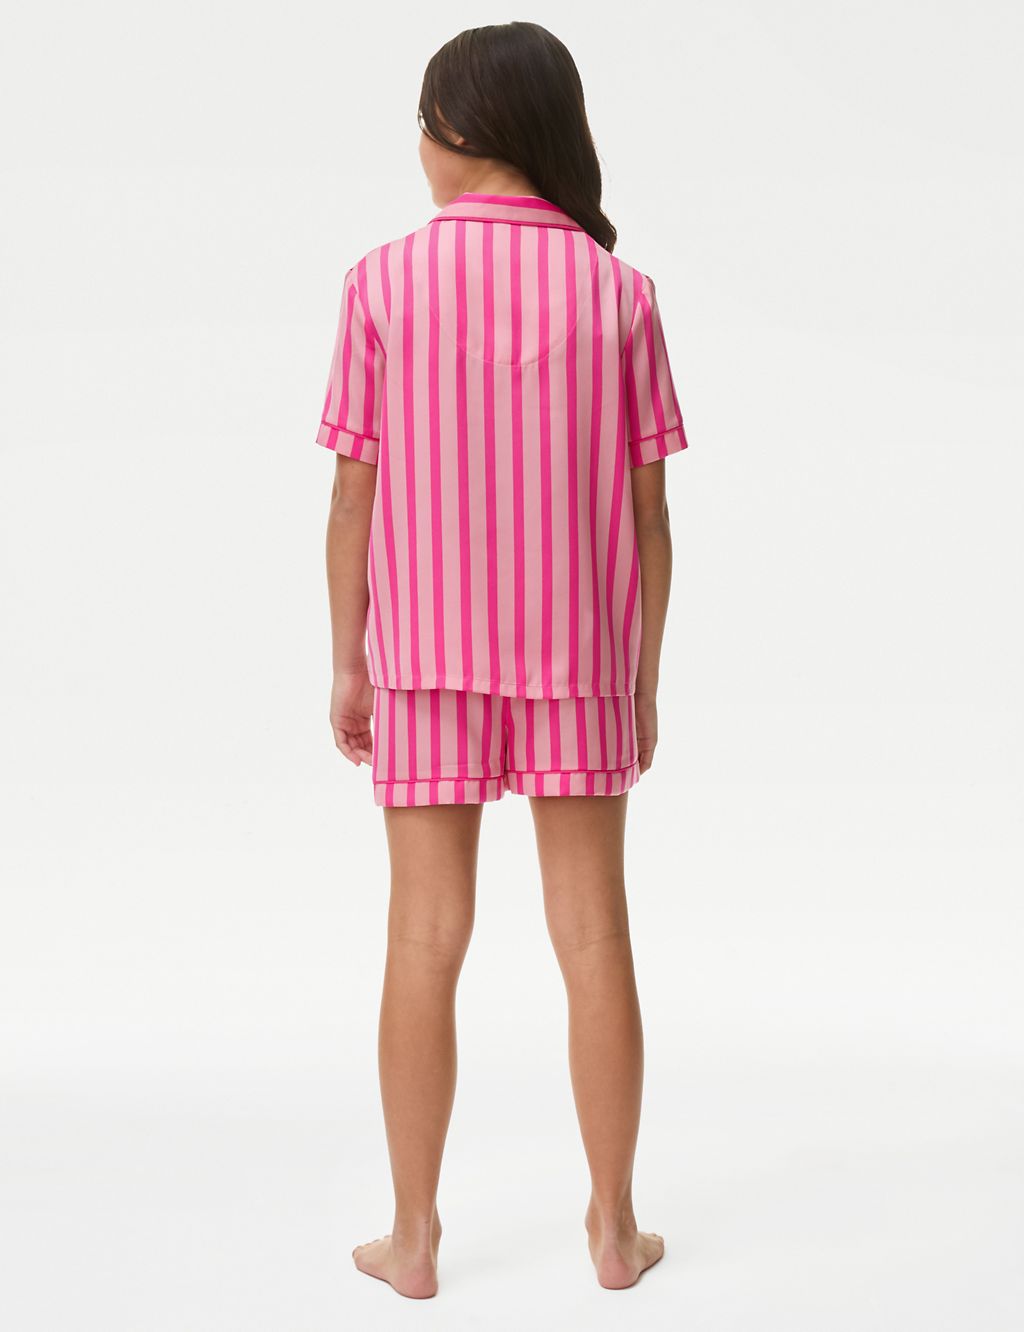 Satin Striped Pyjamas (6-16 Yrs) 2 of 4